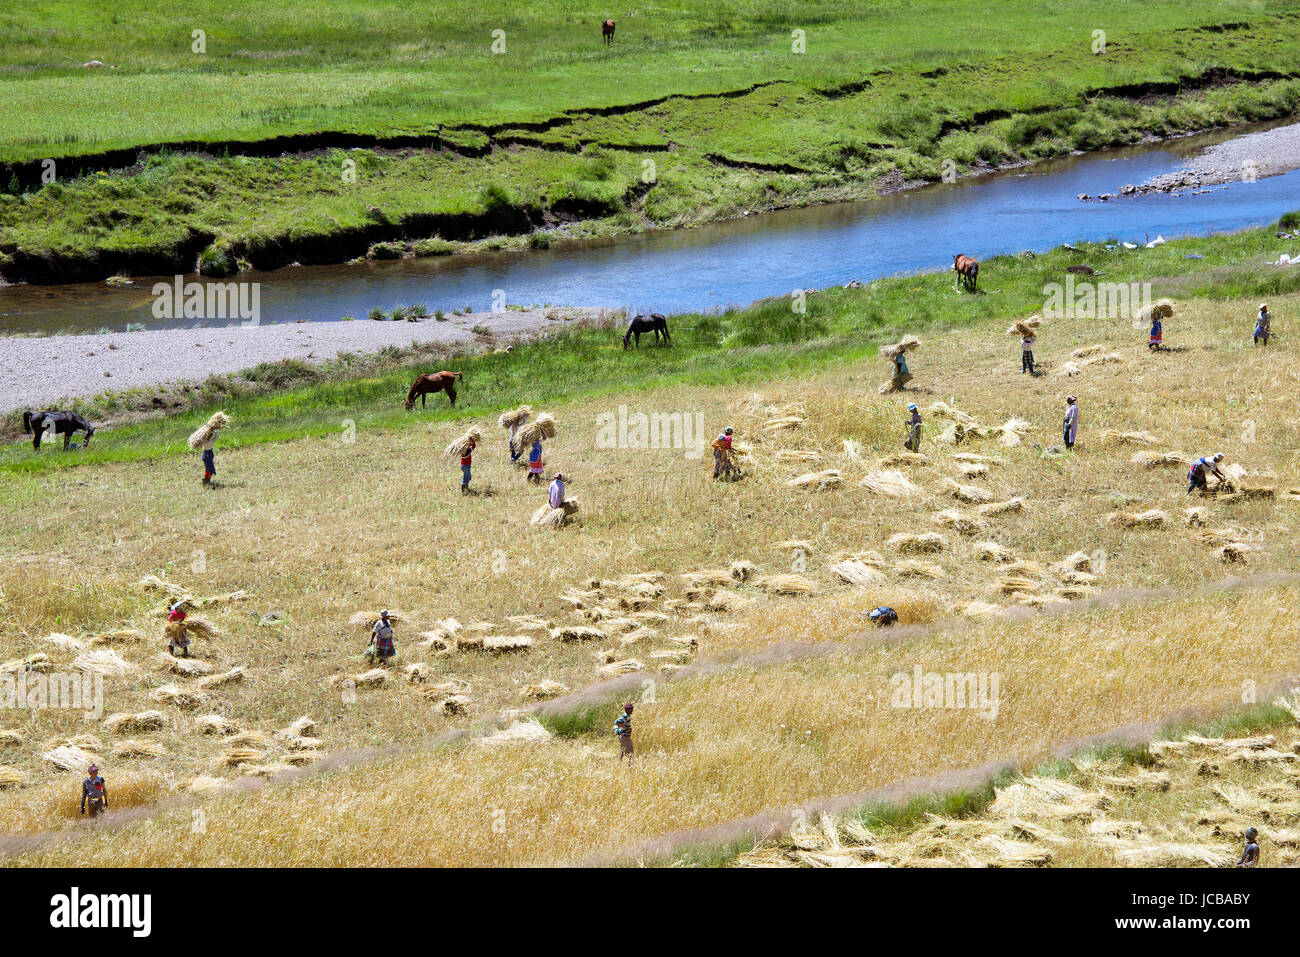 Scène agricole rural de la récolte de cultures Les Lagier Southern Highlands Lesotho Afrique du Sud Banque D'Images